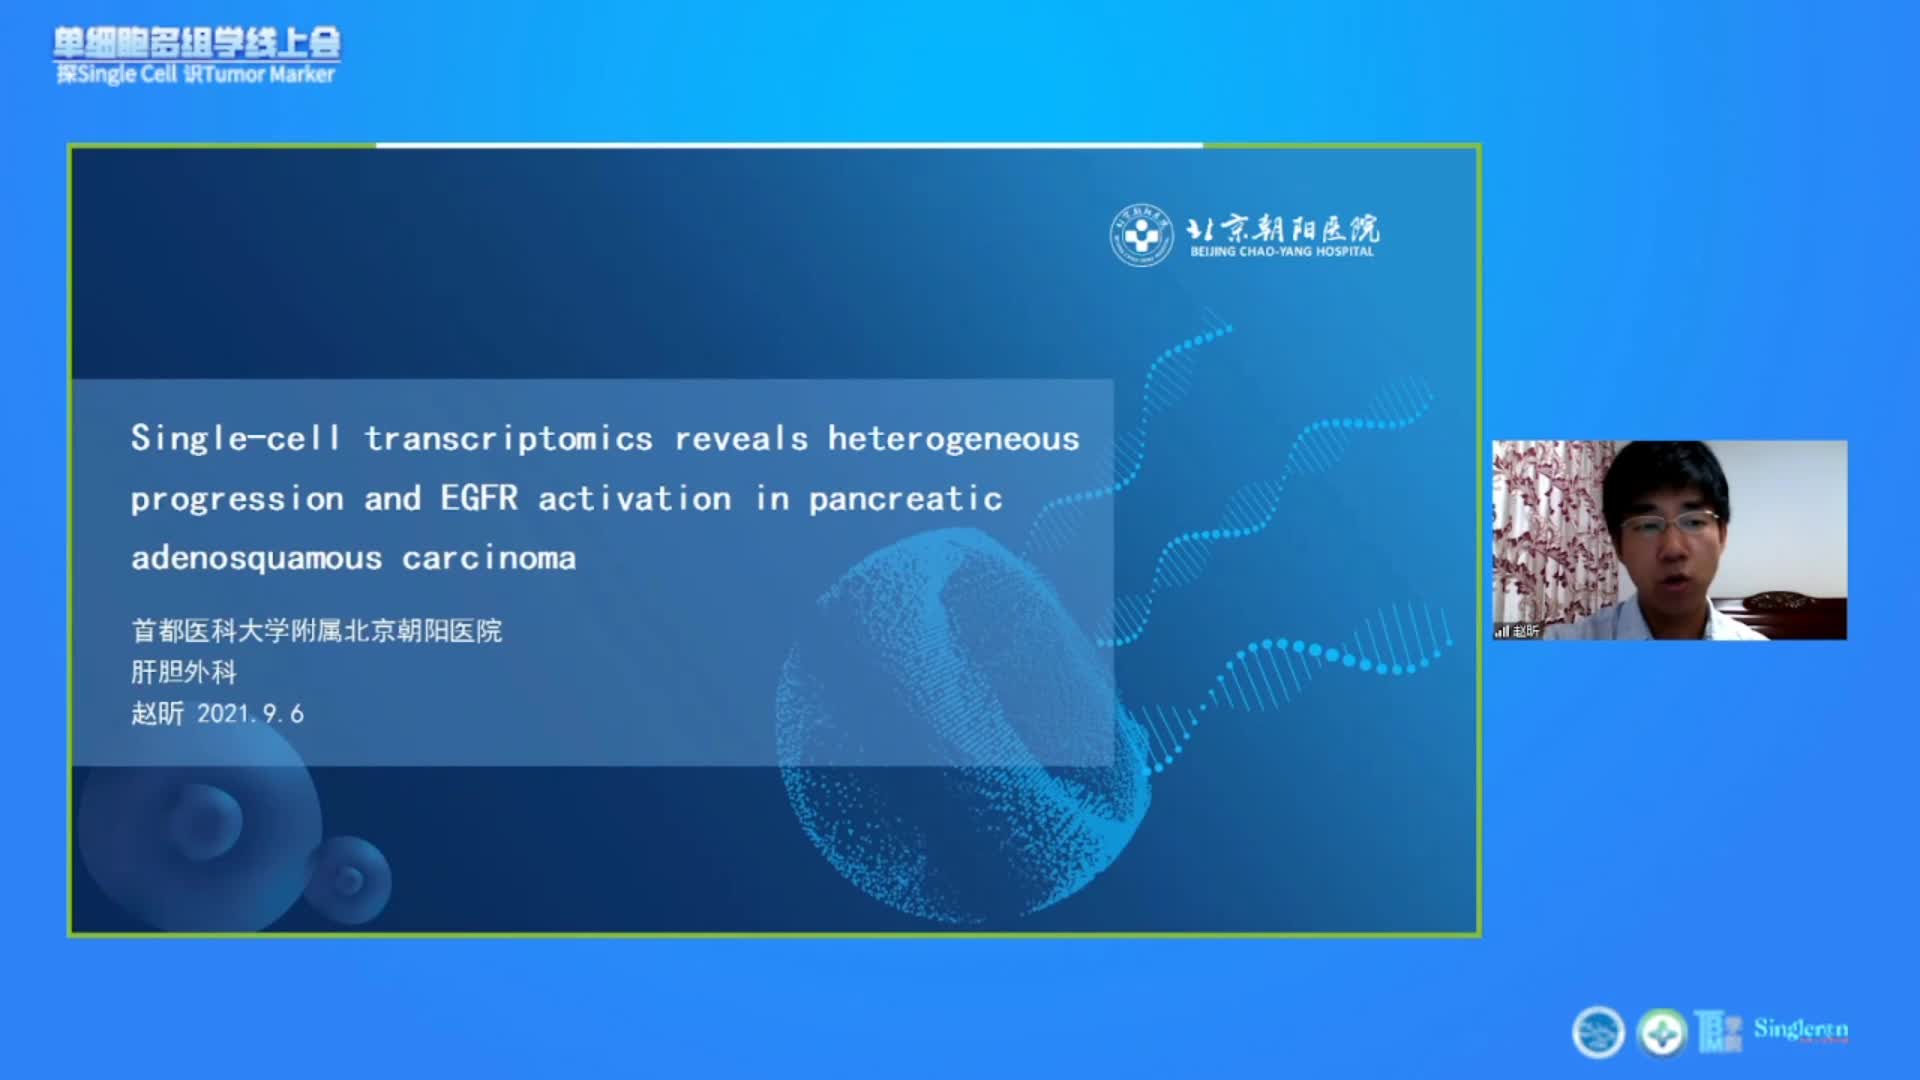 单细胞解析胰腺腺鳞癌异质性及EGFR的作用